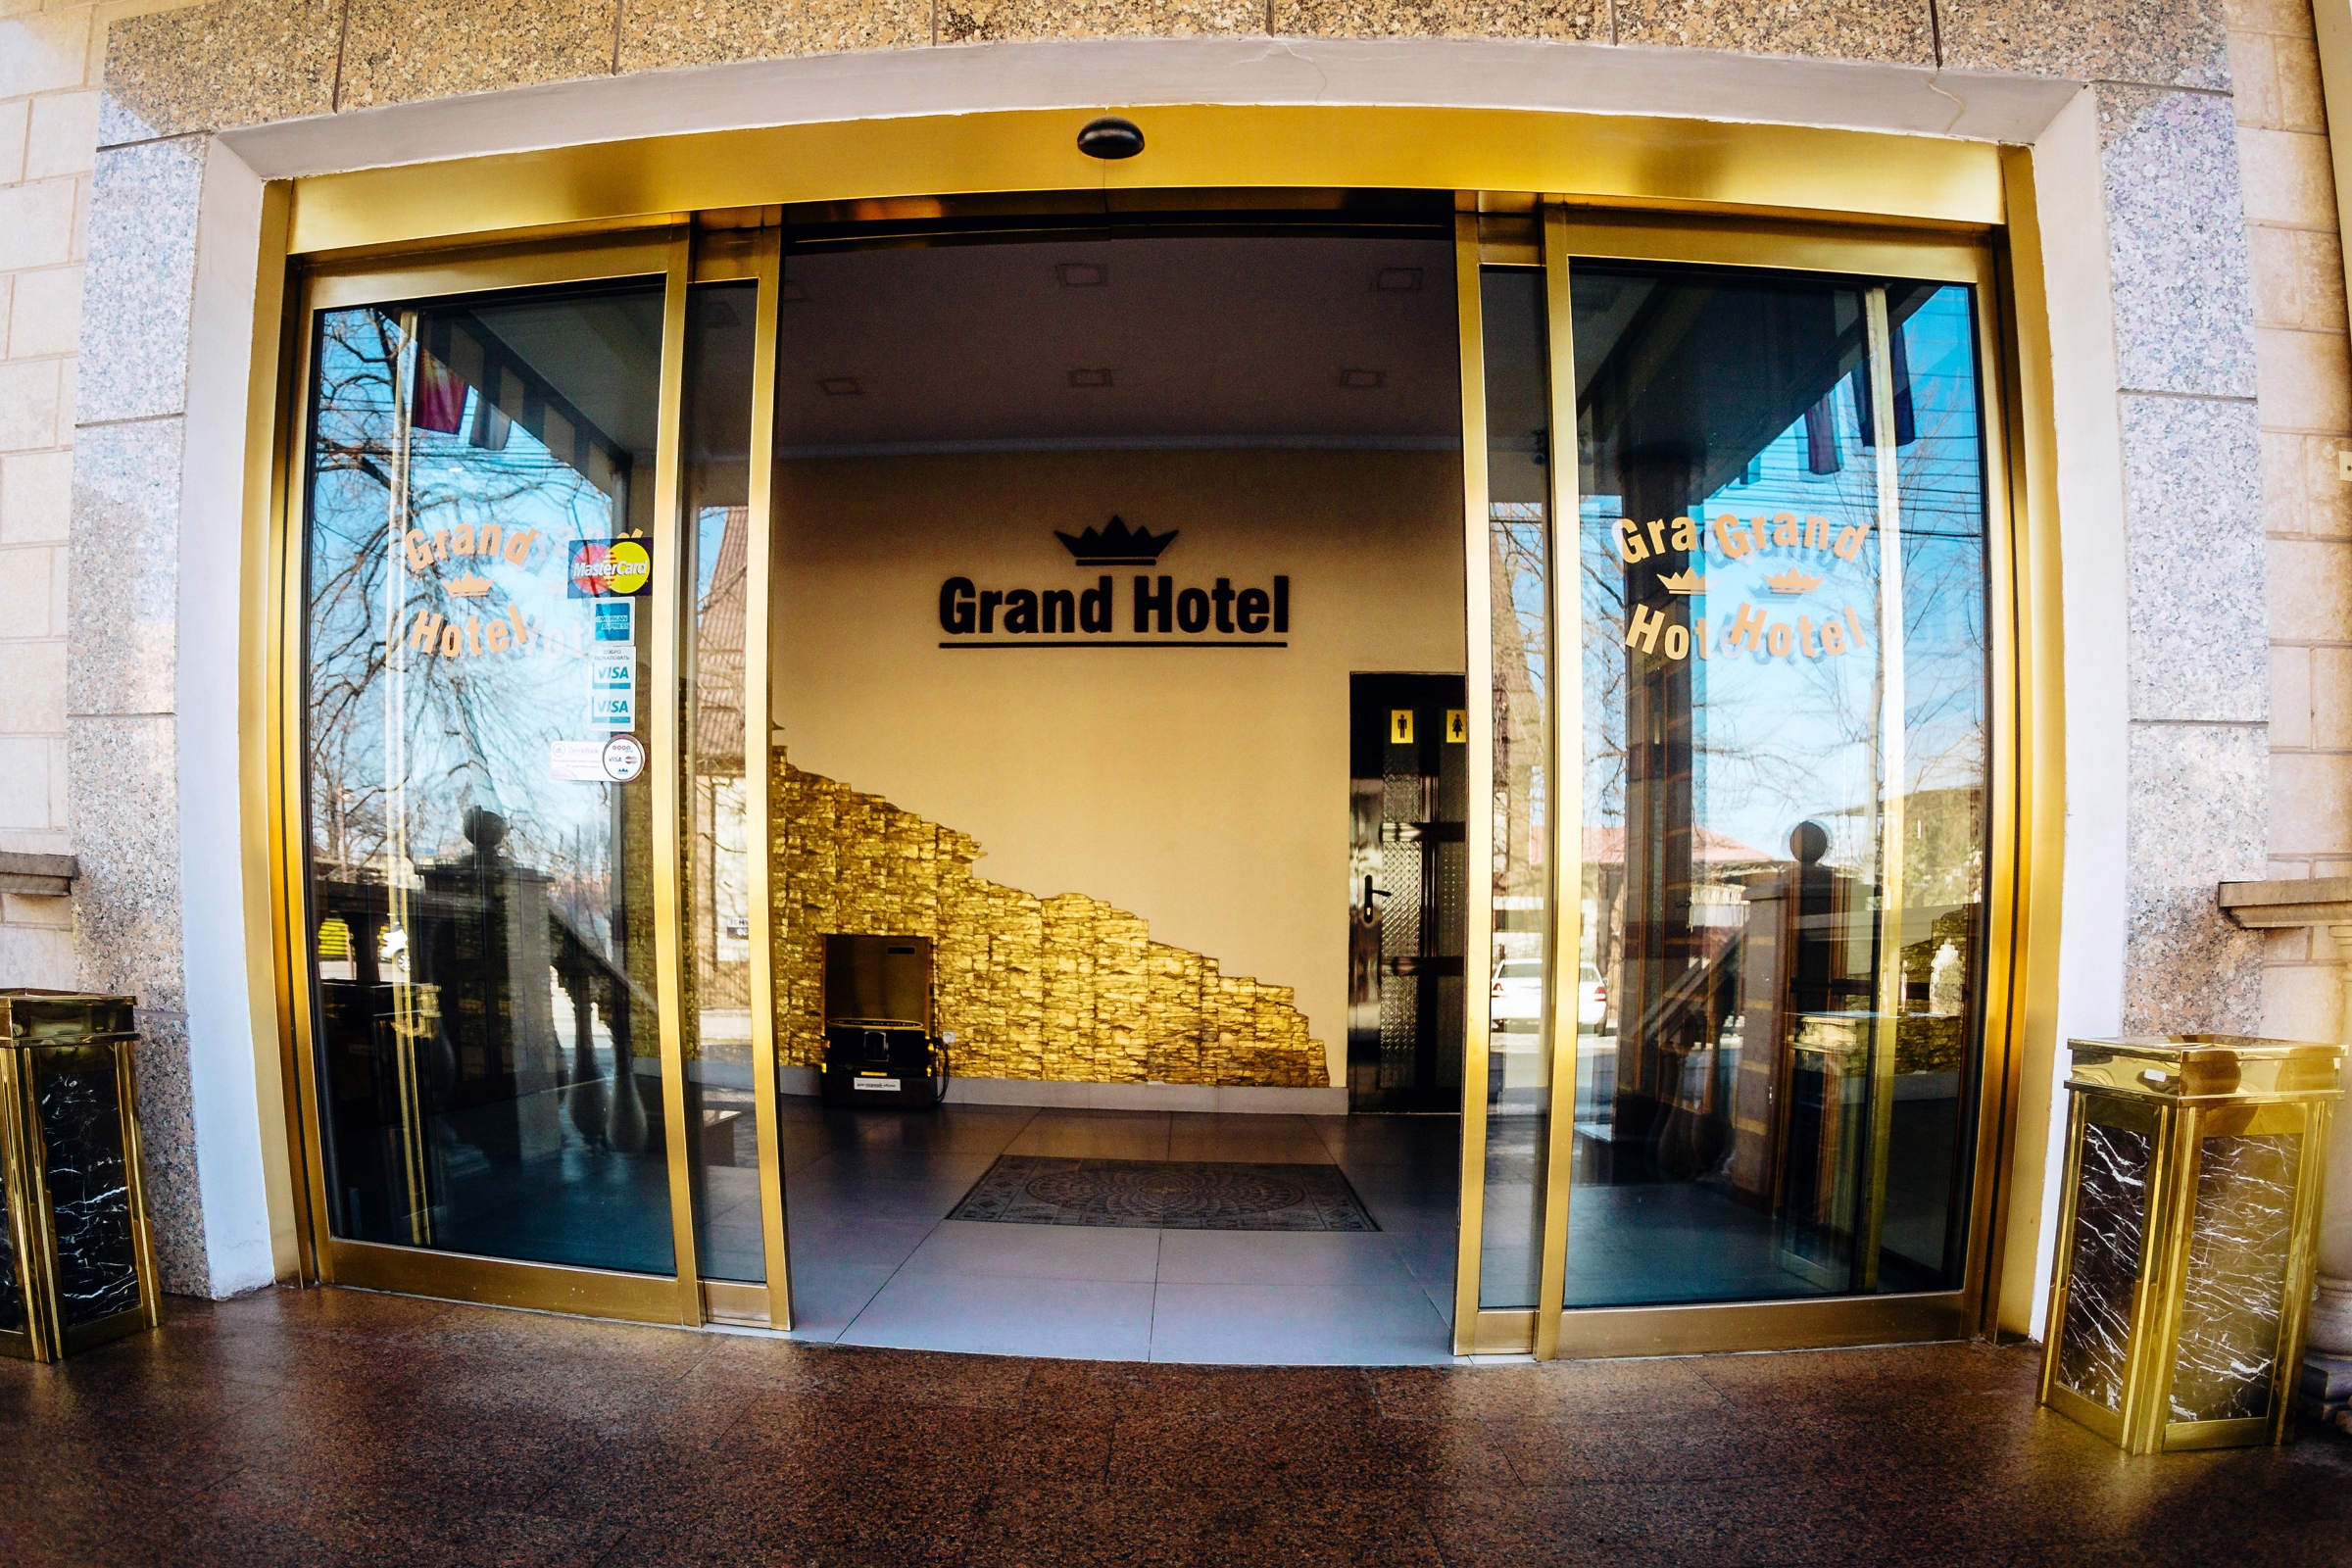 Grand Hotel (Bischkek)